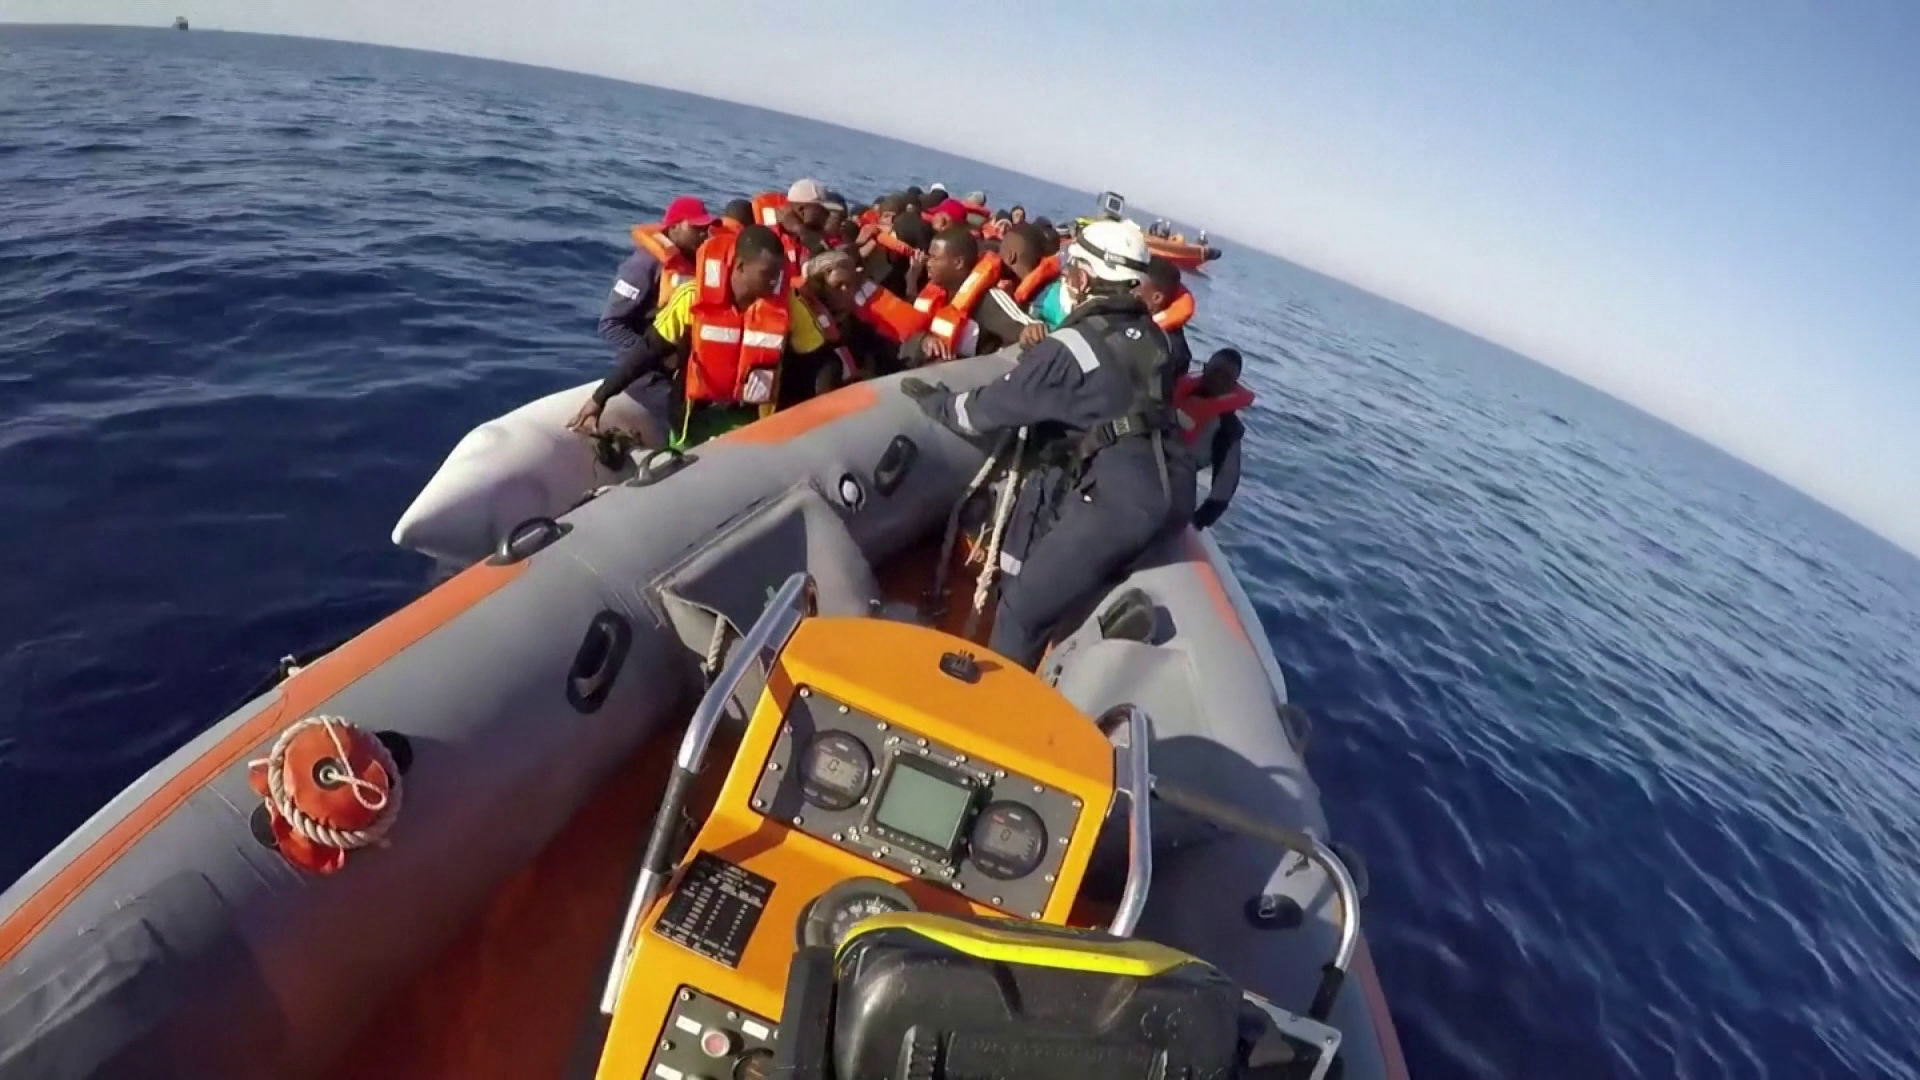 Bevándorlókat mentettek a tengeren, menekülő migránsok borultak fel egy autóval